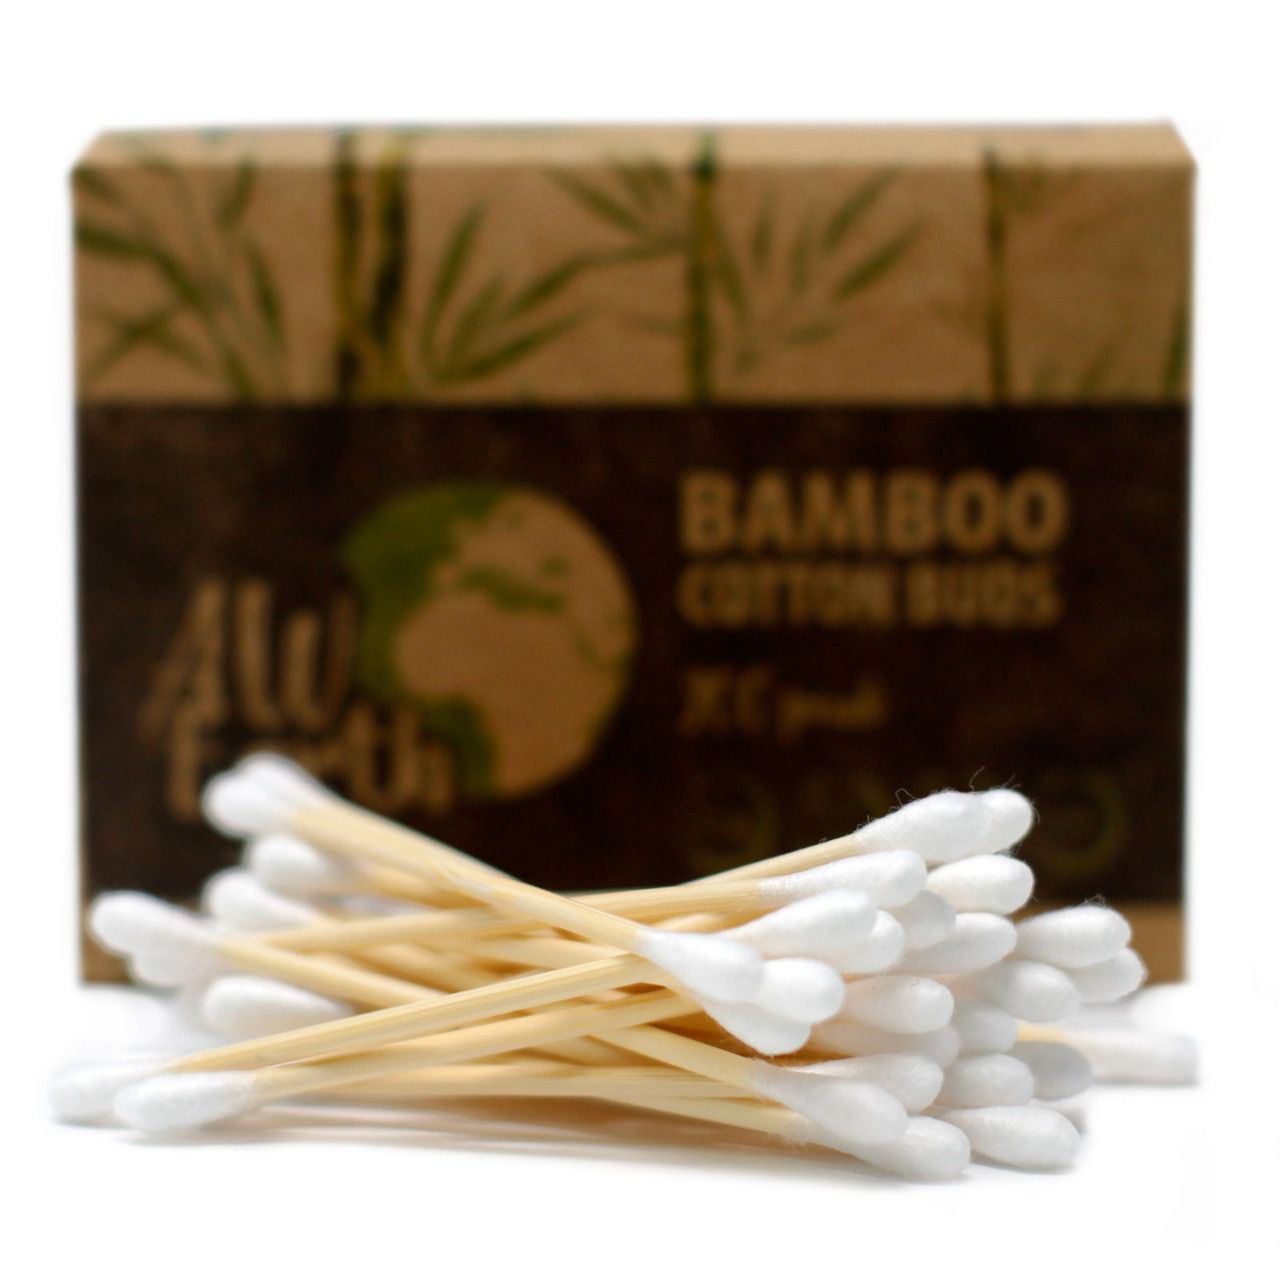 Coton tiges biodégradables en bambou boite de 200